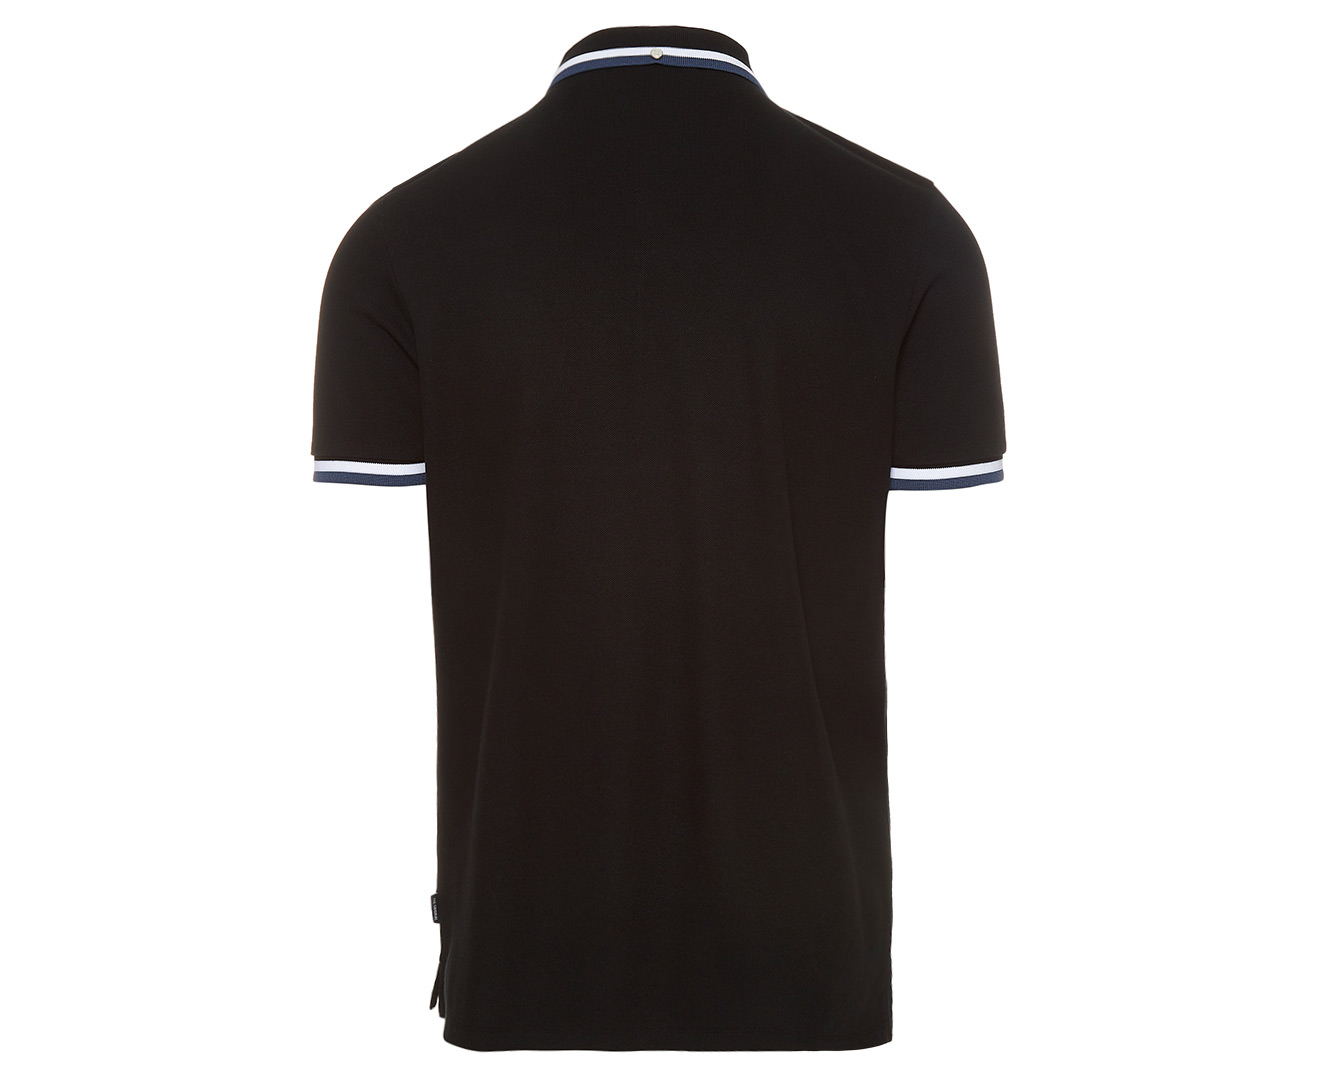 Ben Sherman Men's Twin Panel Polo Shirt - Black/White/Petrol Blue